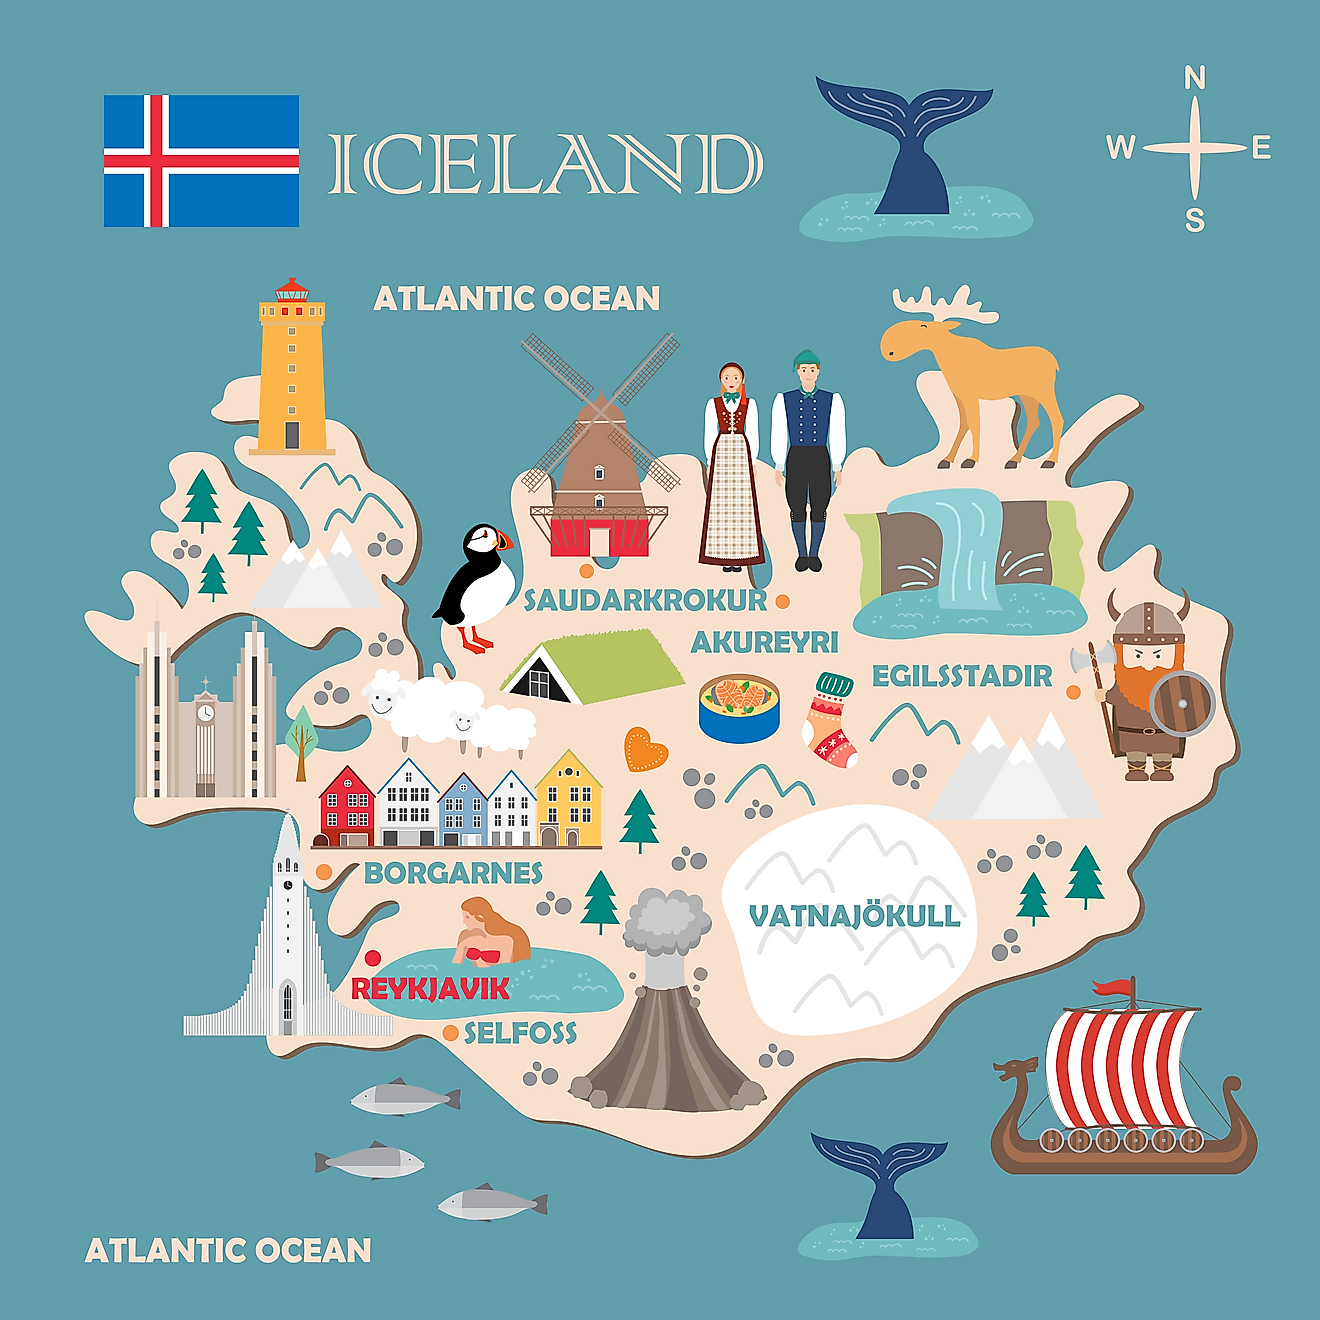 17 Juin 1944 – L'Islande dissout son union avec le Danemark et se ...